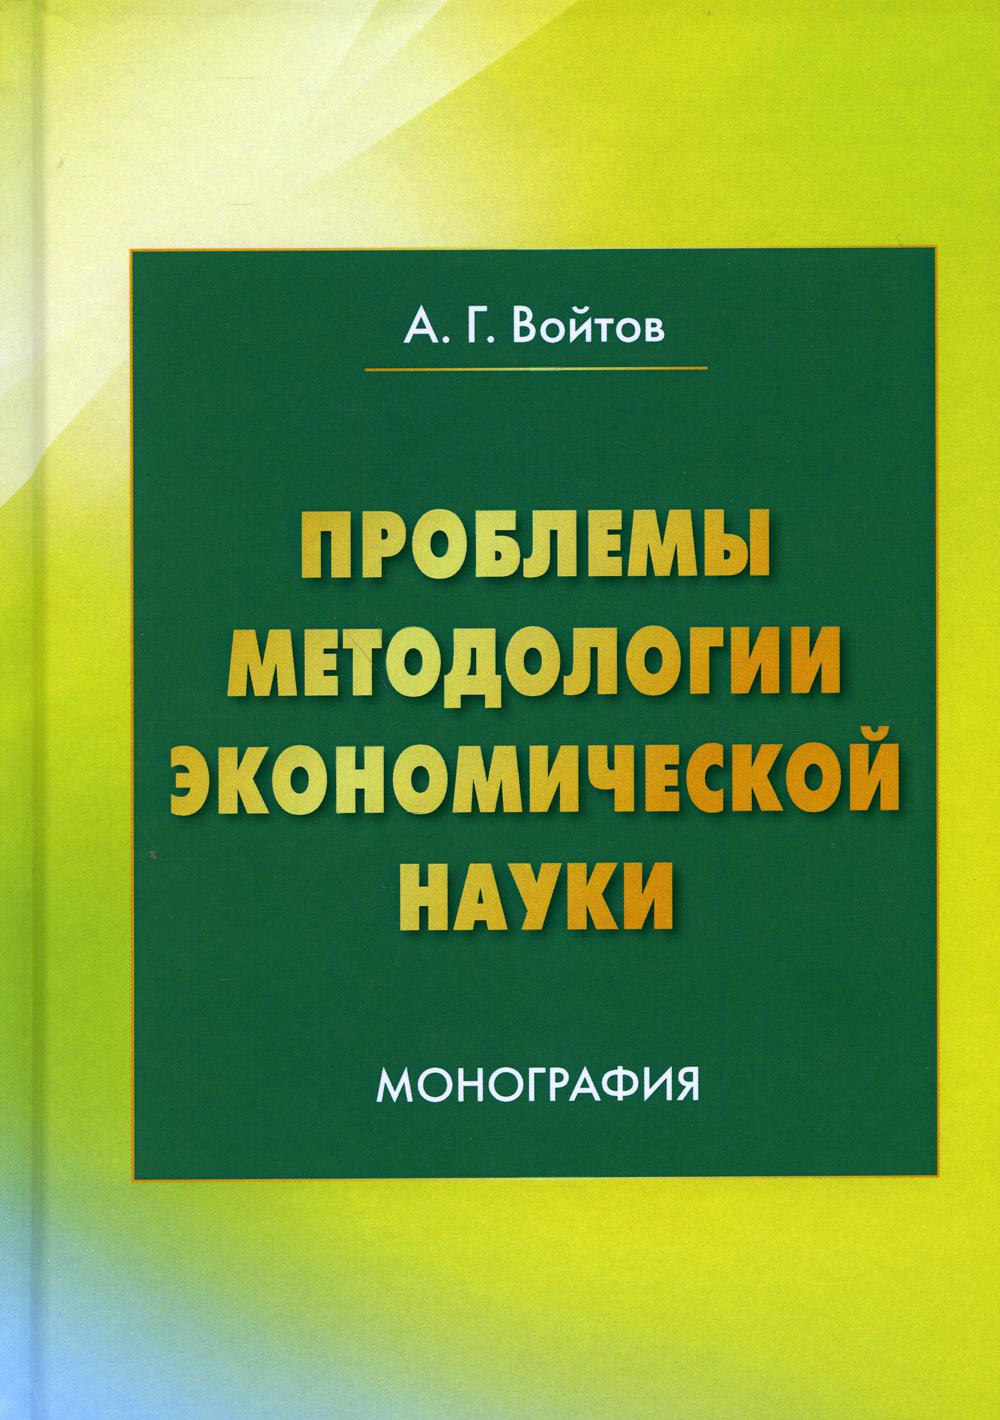 фото Книга проблемы методологии экономической науки 4-е изд. дашков и к